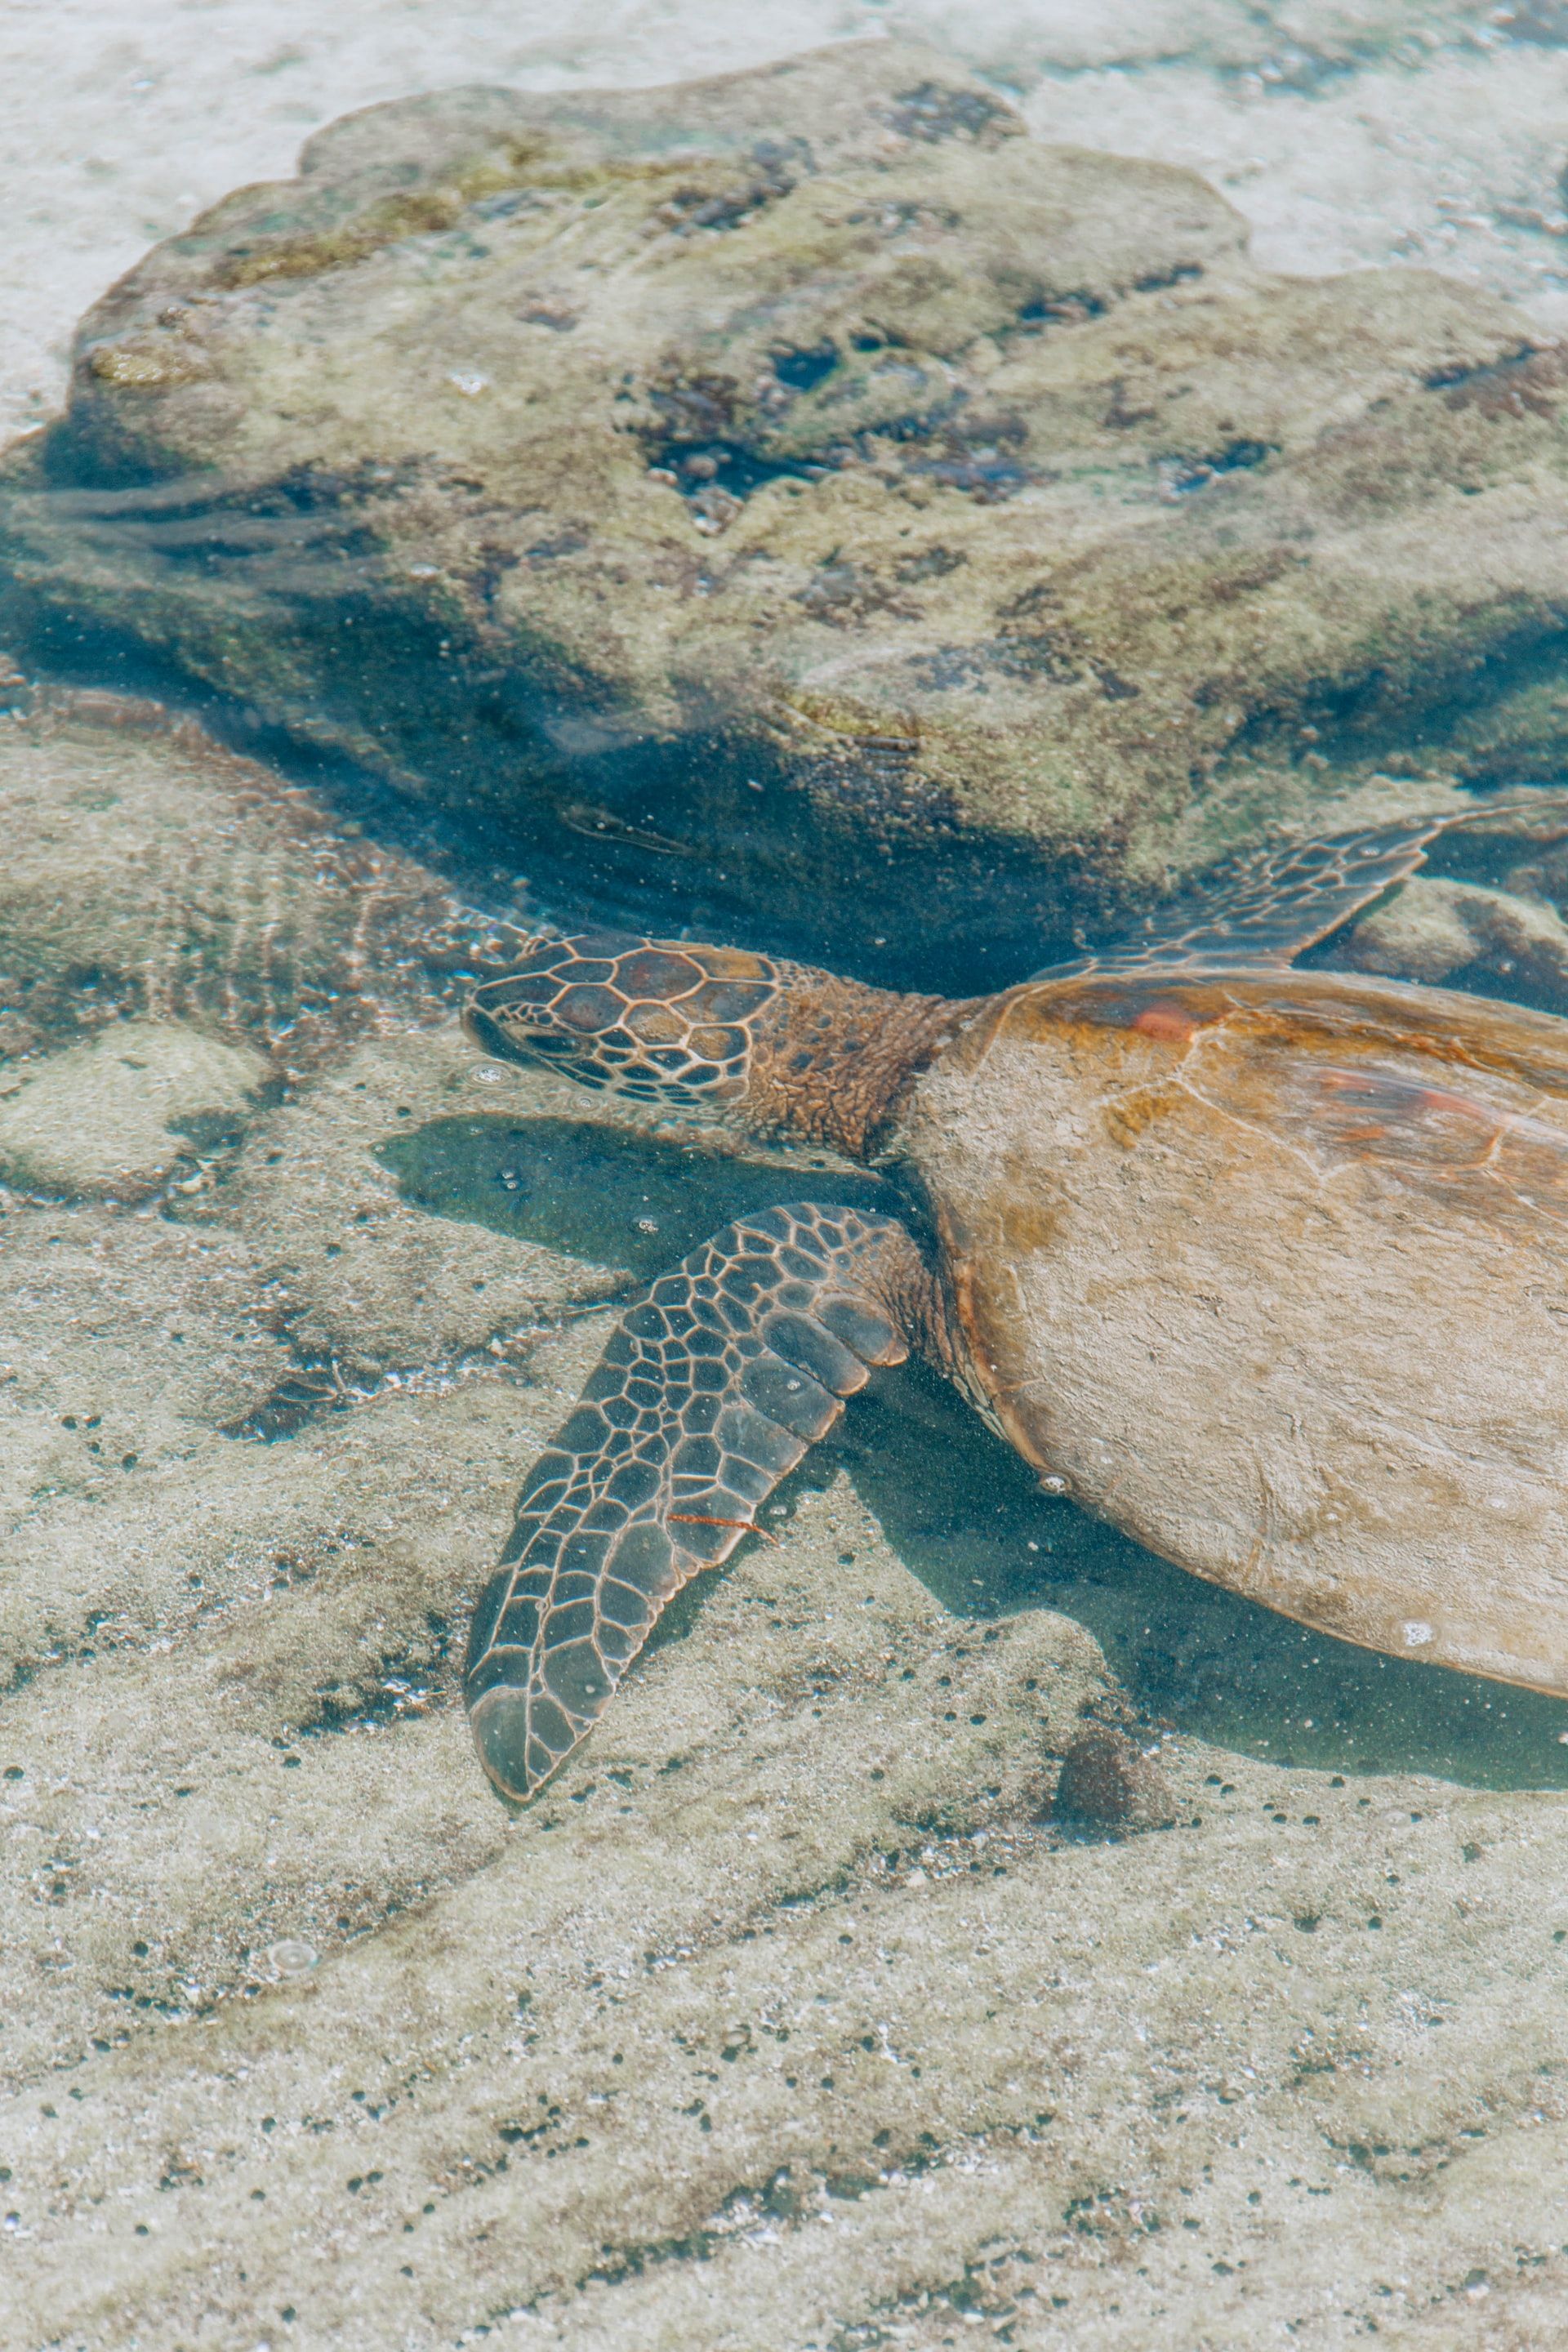 Sea turtle swimming through Kona's waters.